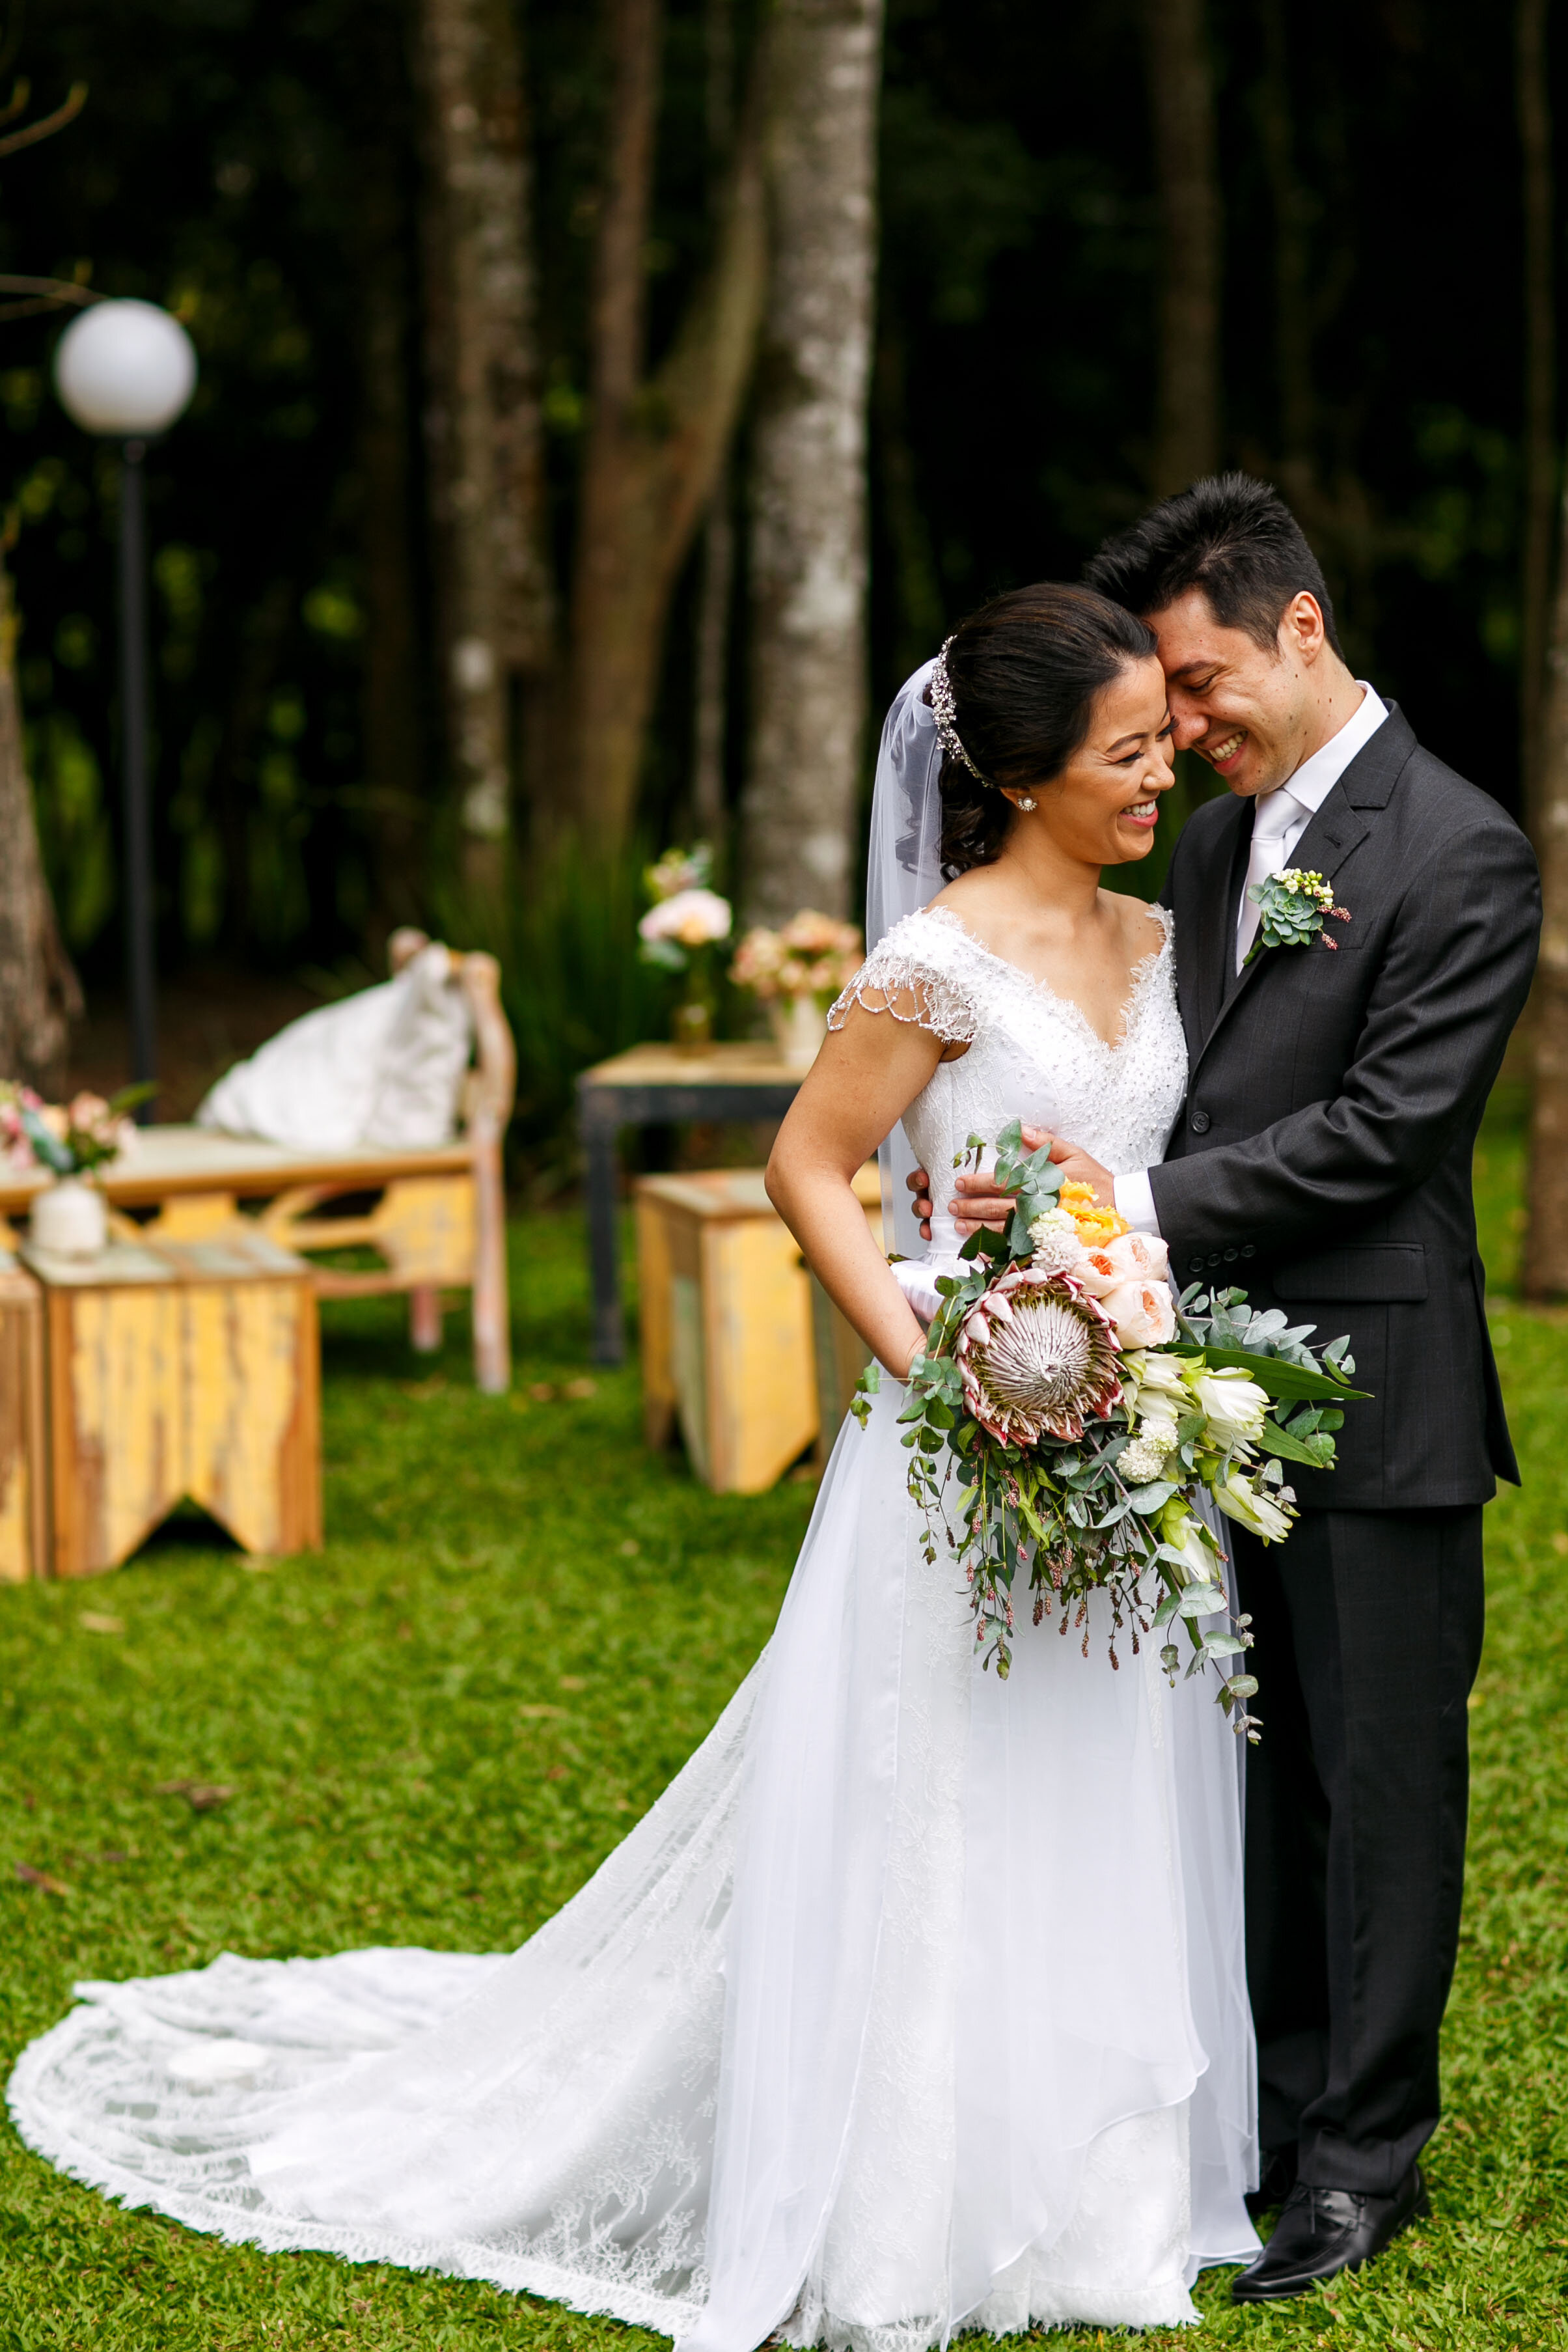 Cheng NV fotografo de casamento em Curitiba- Melhor fotografia do brasil - MIni casamento - Inspiração de decoração - 2020 - noiva - inesquecivel casamento_.72.jpg